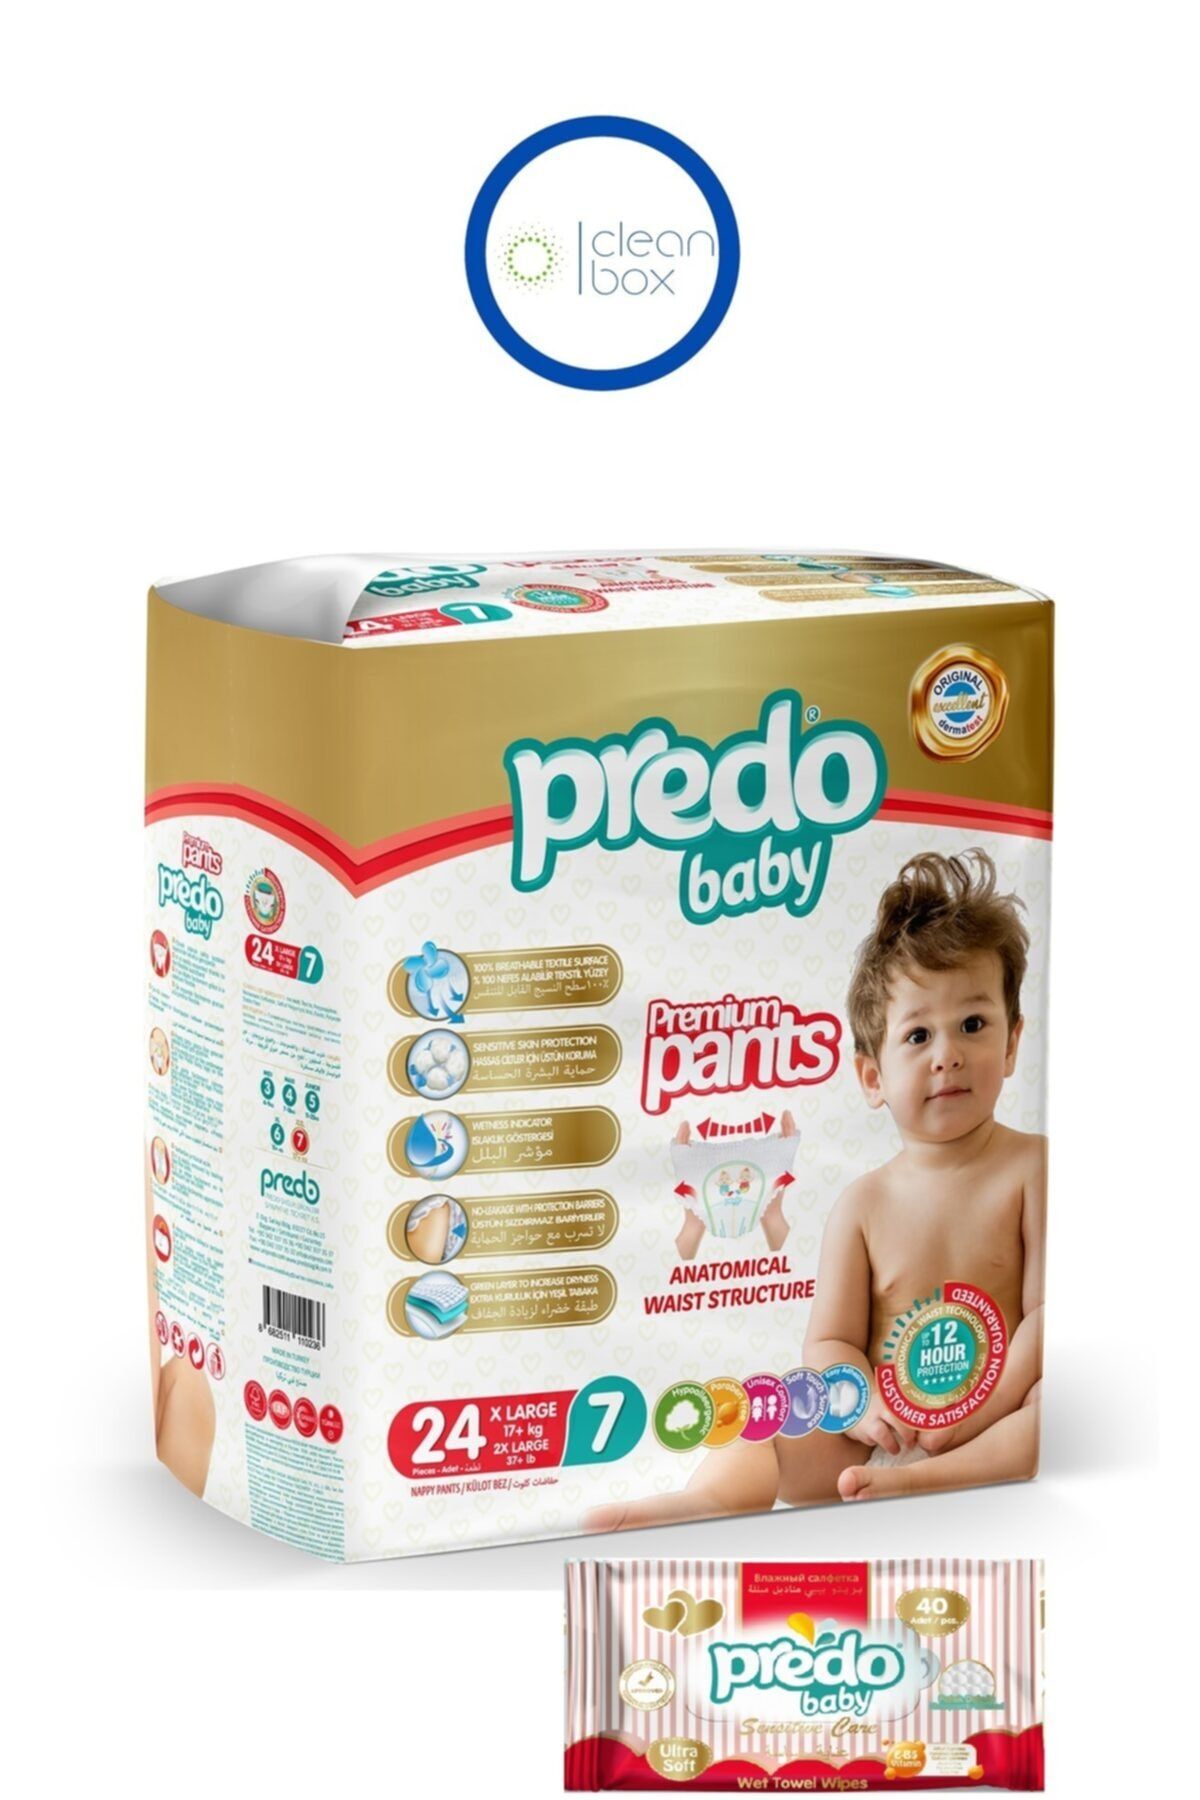 PREDO Premium Pants Külot Bezi 7 Numara 24 Adet + Islak Mendil 40'lı